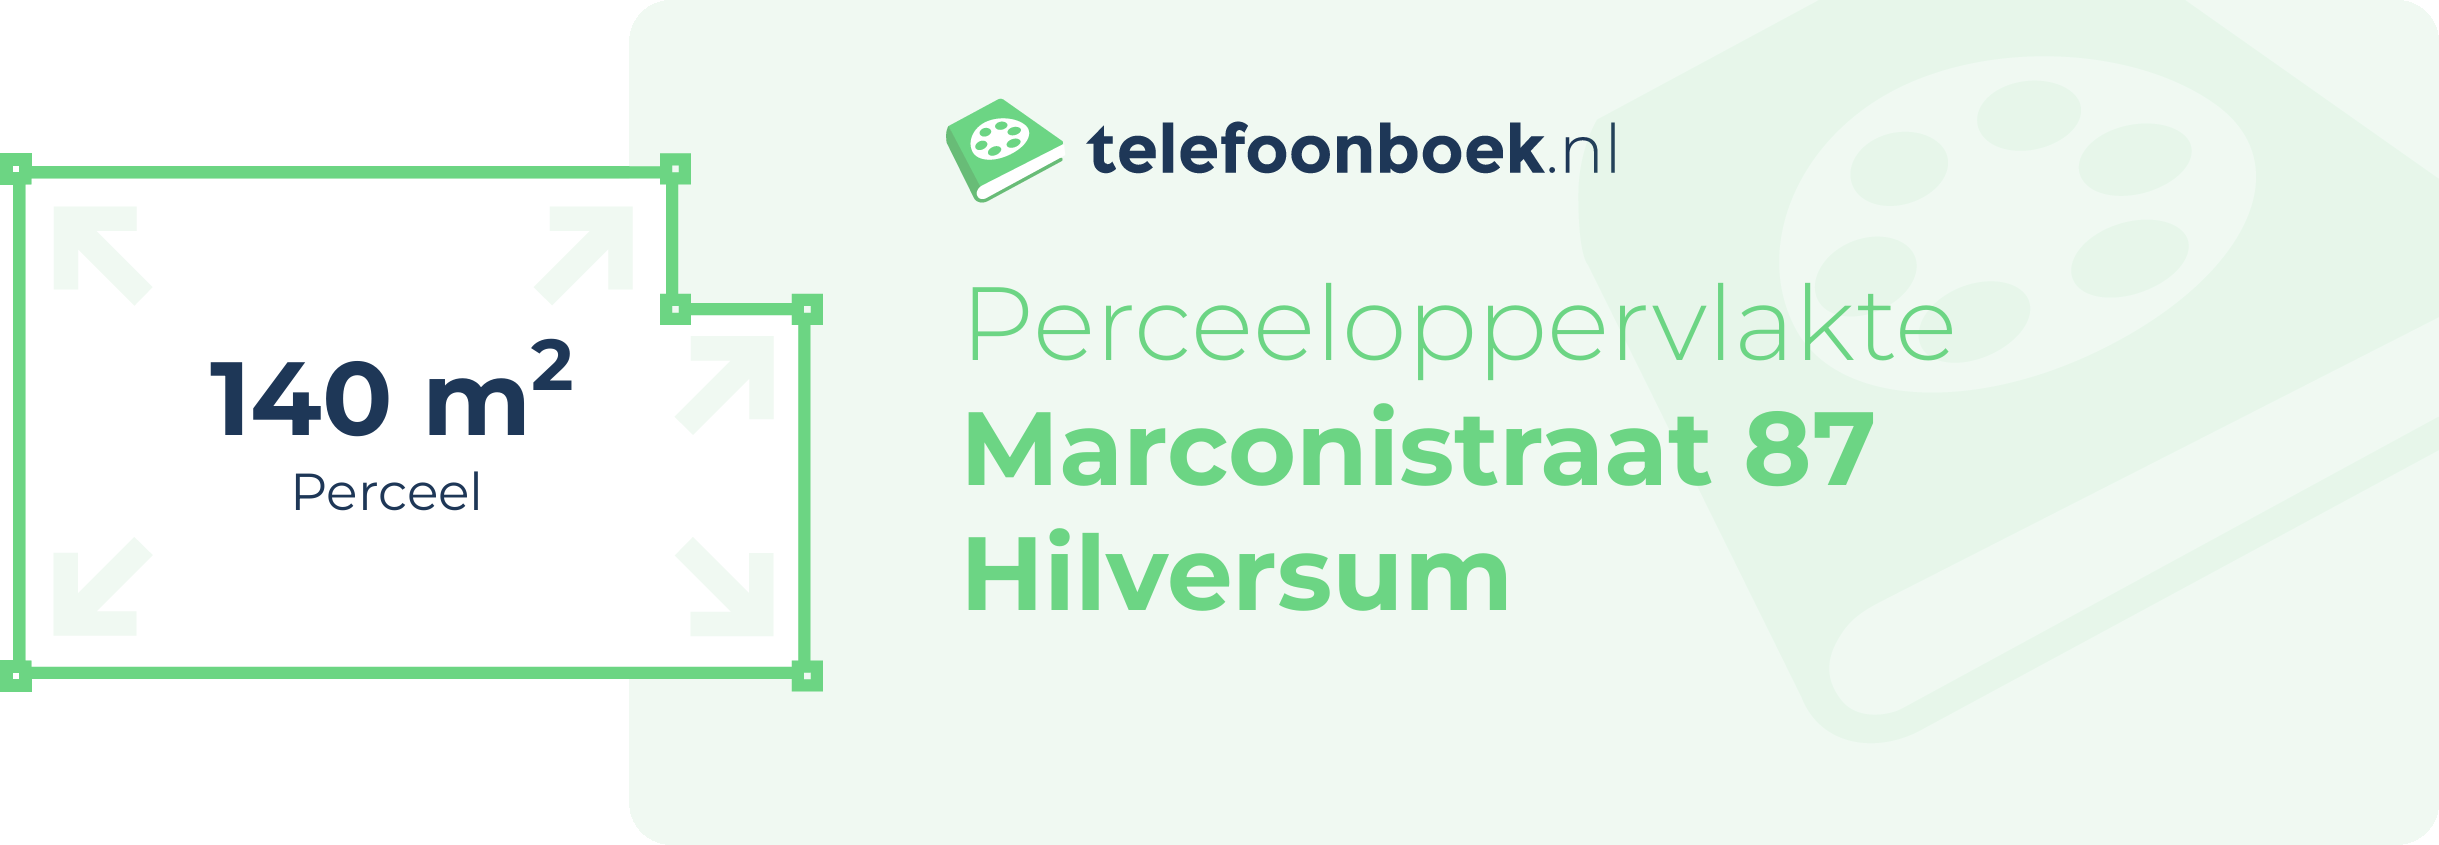 Perceeloppervlakte Marconistraat 87 Hilversum